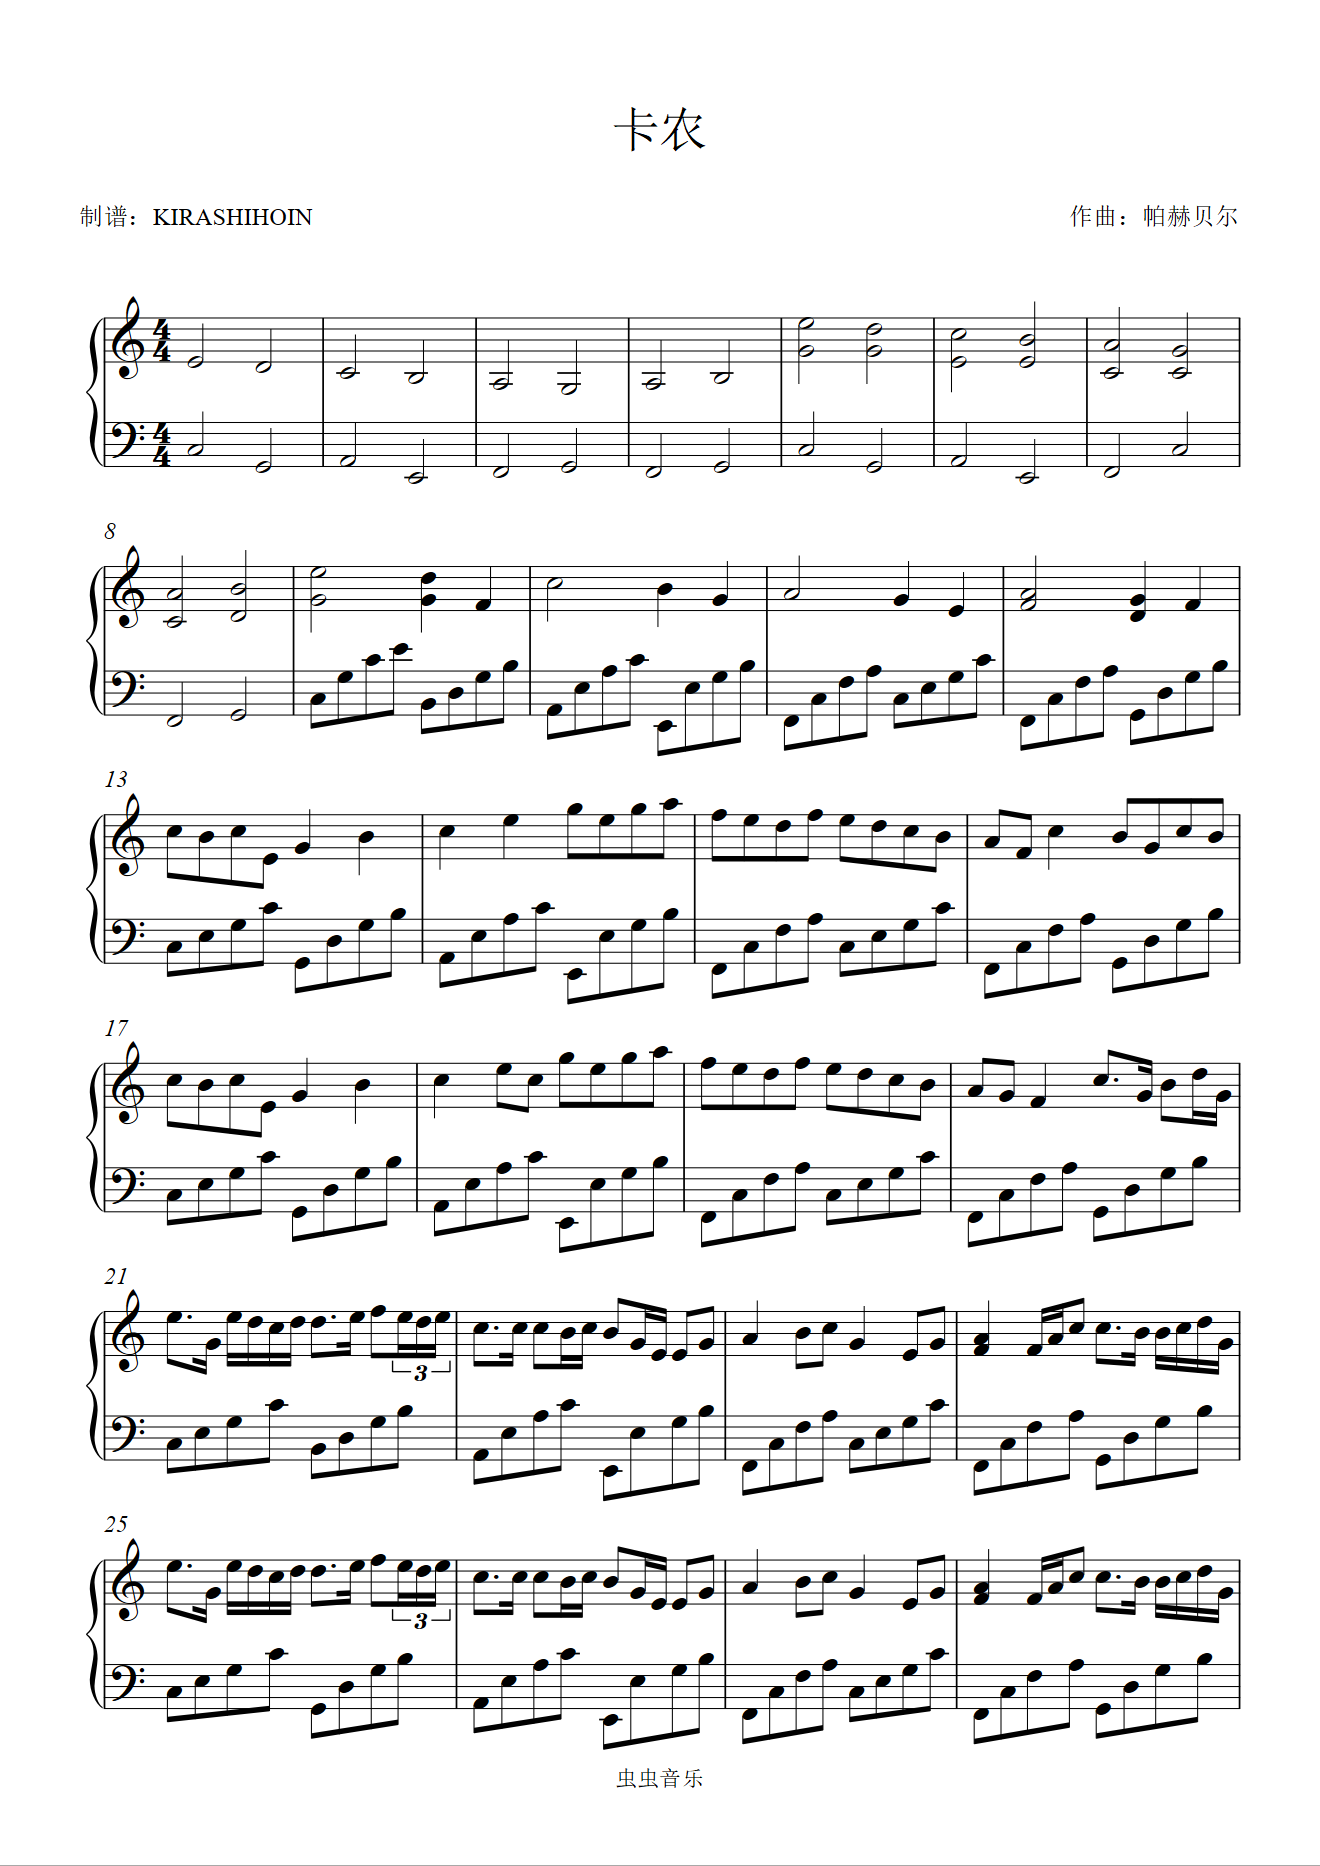 关于卡农钢琴谱完整版阿拉伯数字的信息